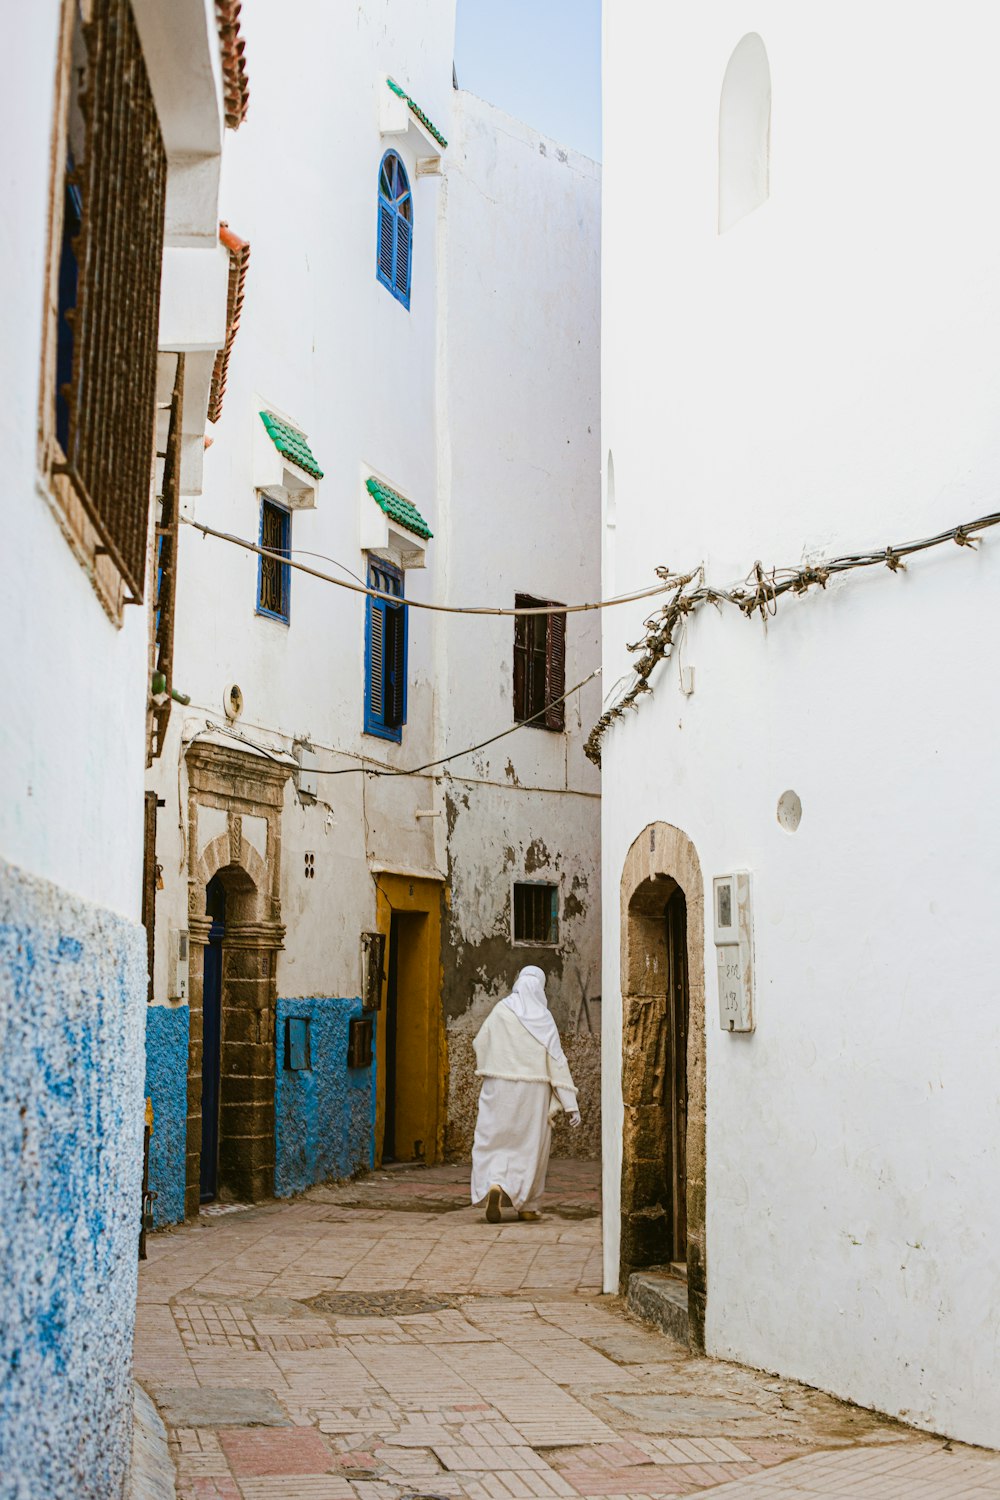 uma pessoa em um manto branco andando por uma rua